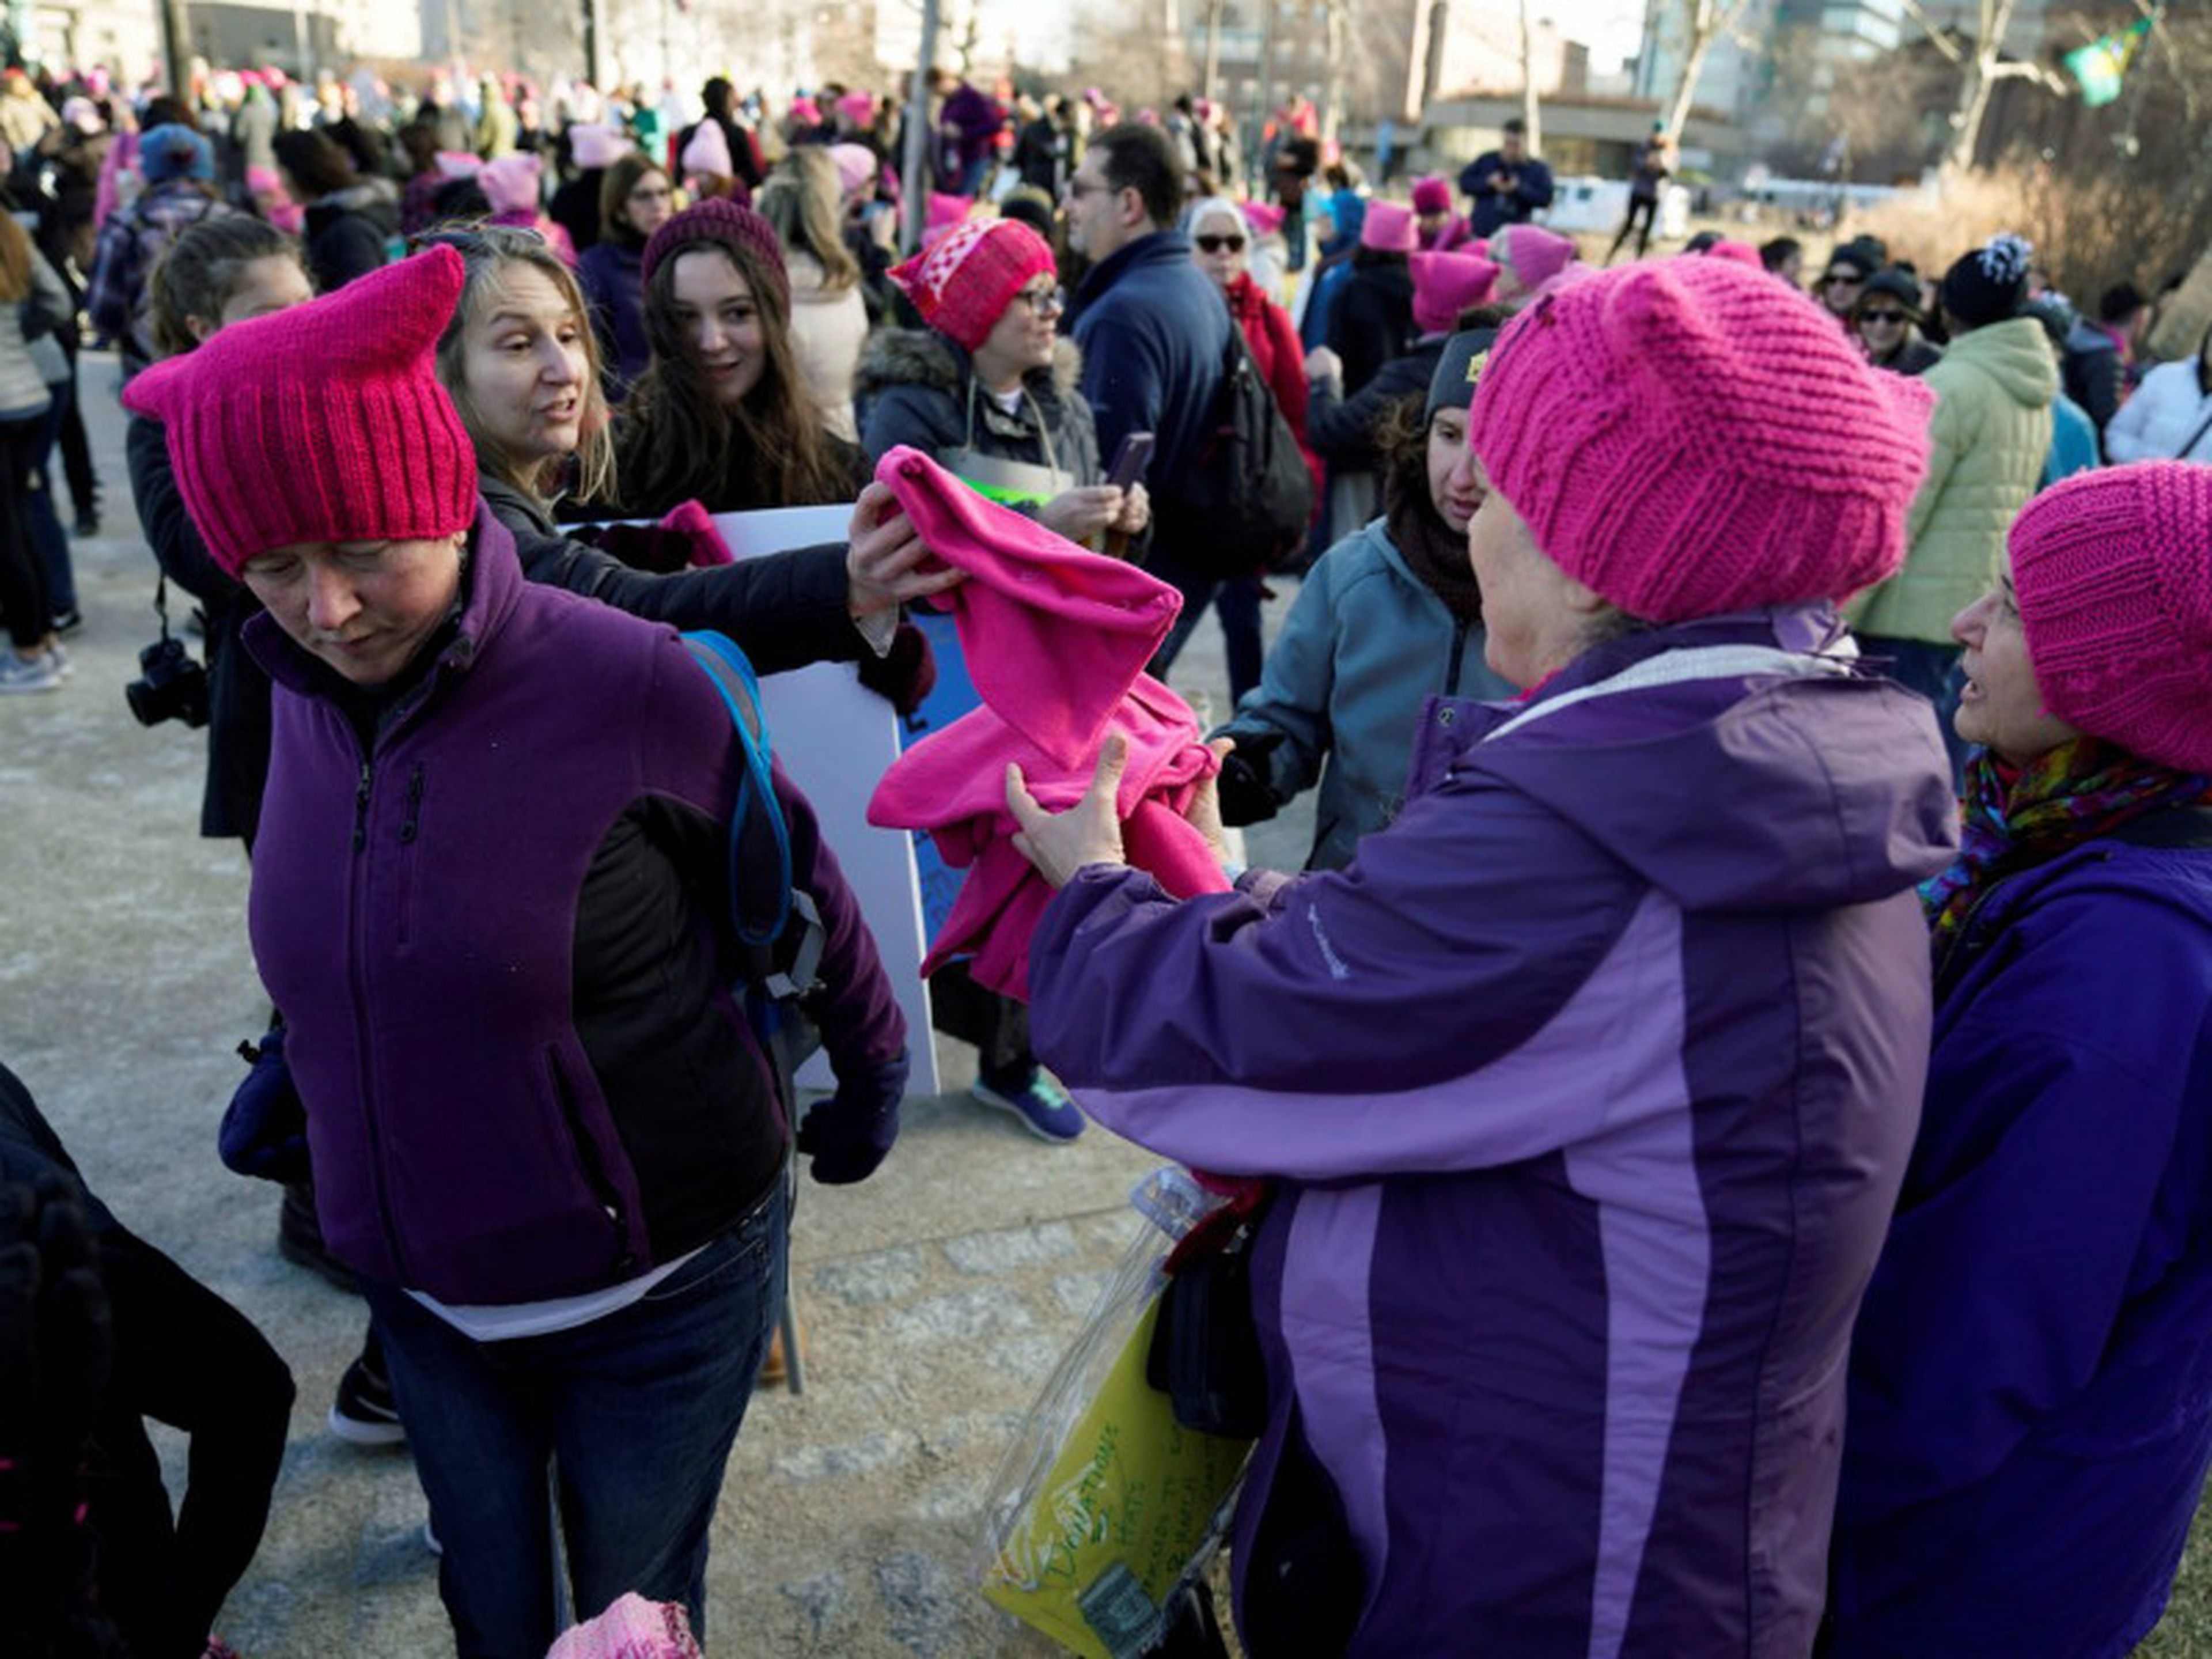 Unas mujeres reparten gorros rosas al inicio de la marcha.